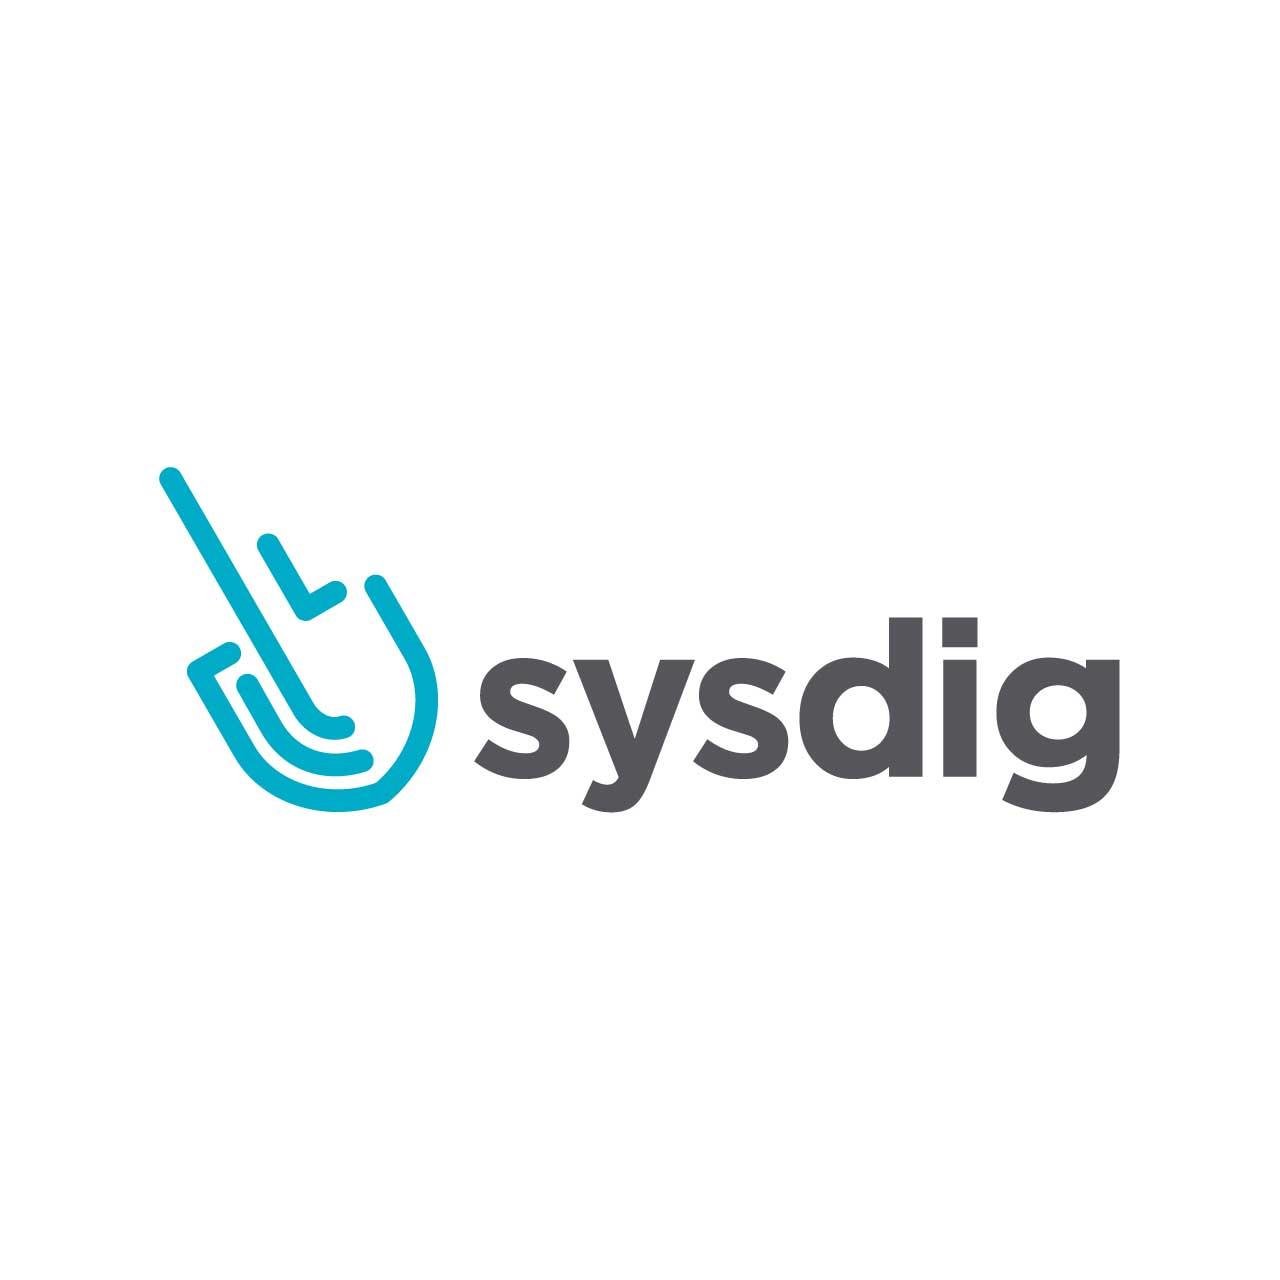 Sysdigの新機能 2020年11月